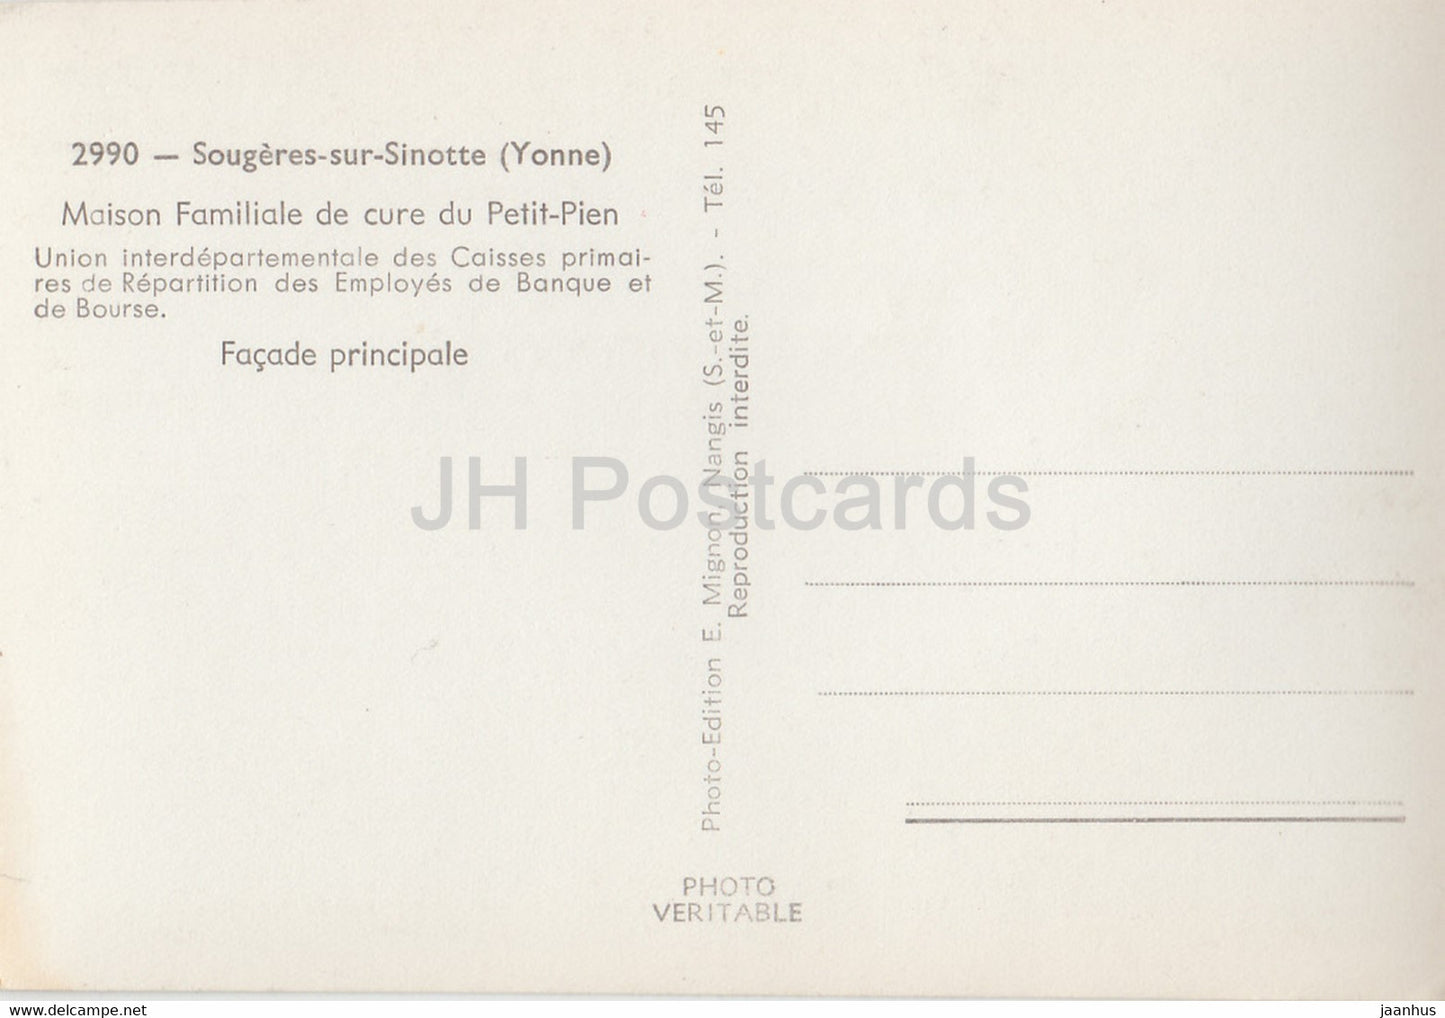 Sougeres sur Sinotte - Maison Familiale de cure du Petit Pien - carte postale ancienne - France - inutilisée